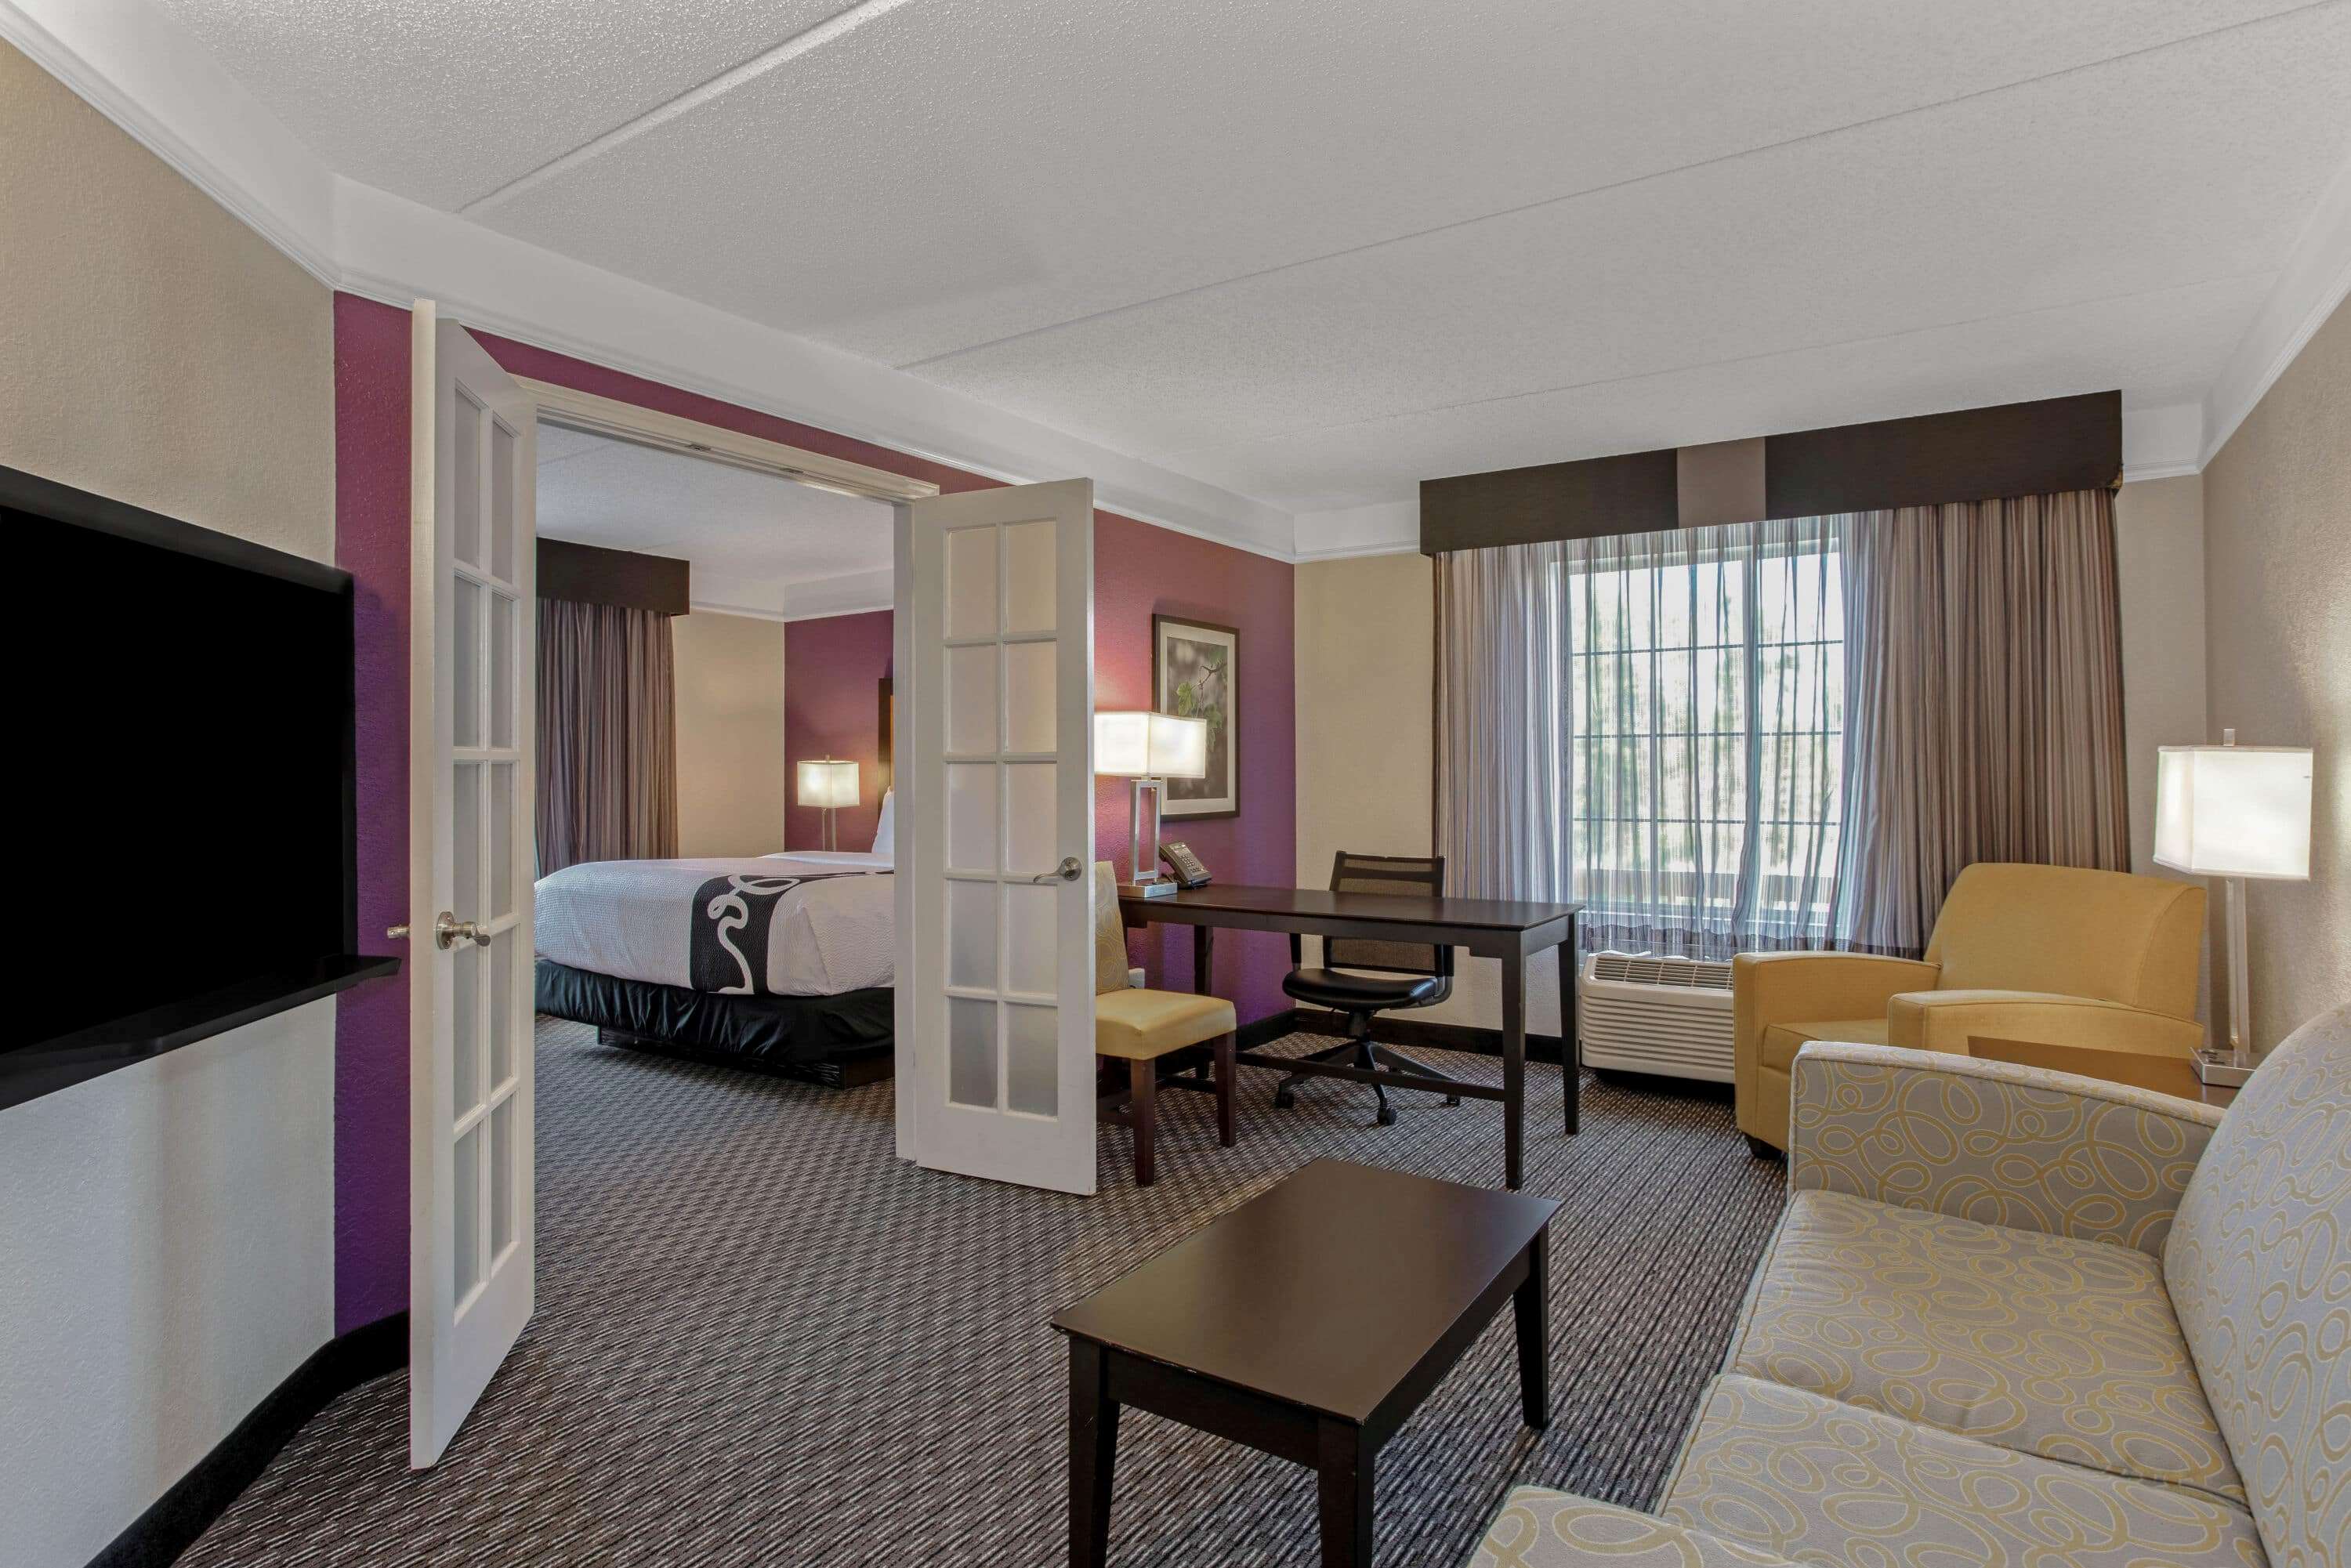 La Quinta Inn & Suites by Wyndham Orlando Airport North